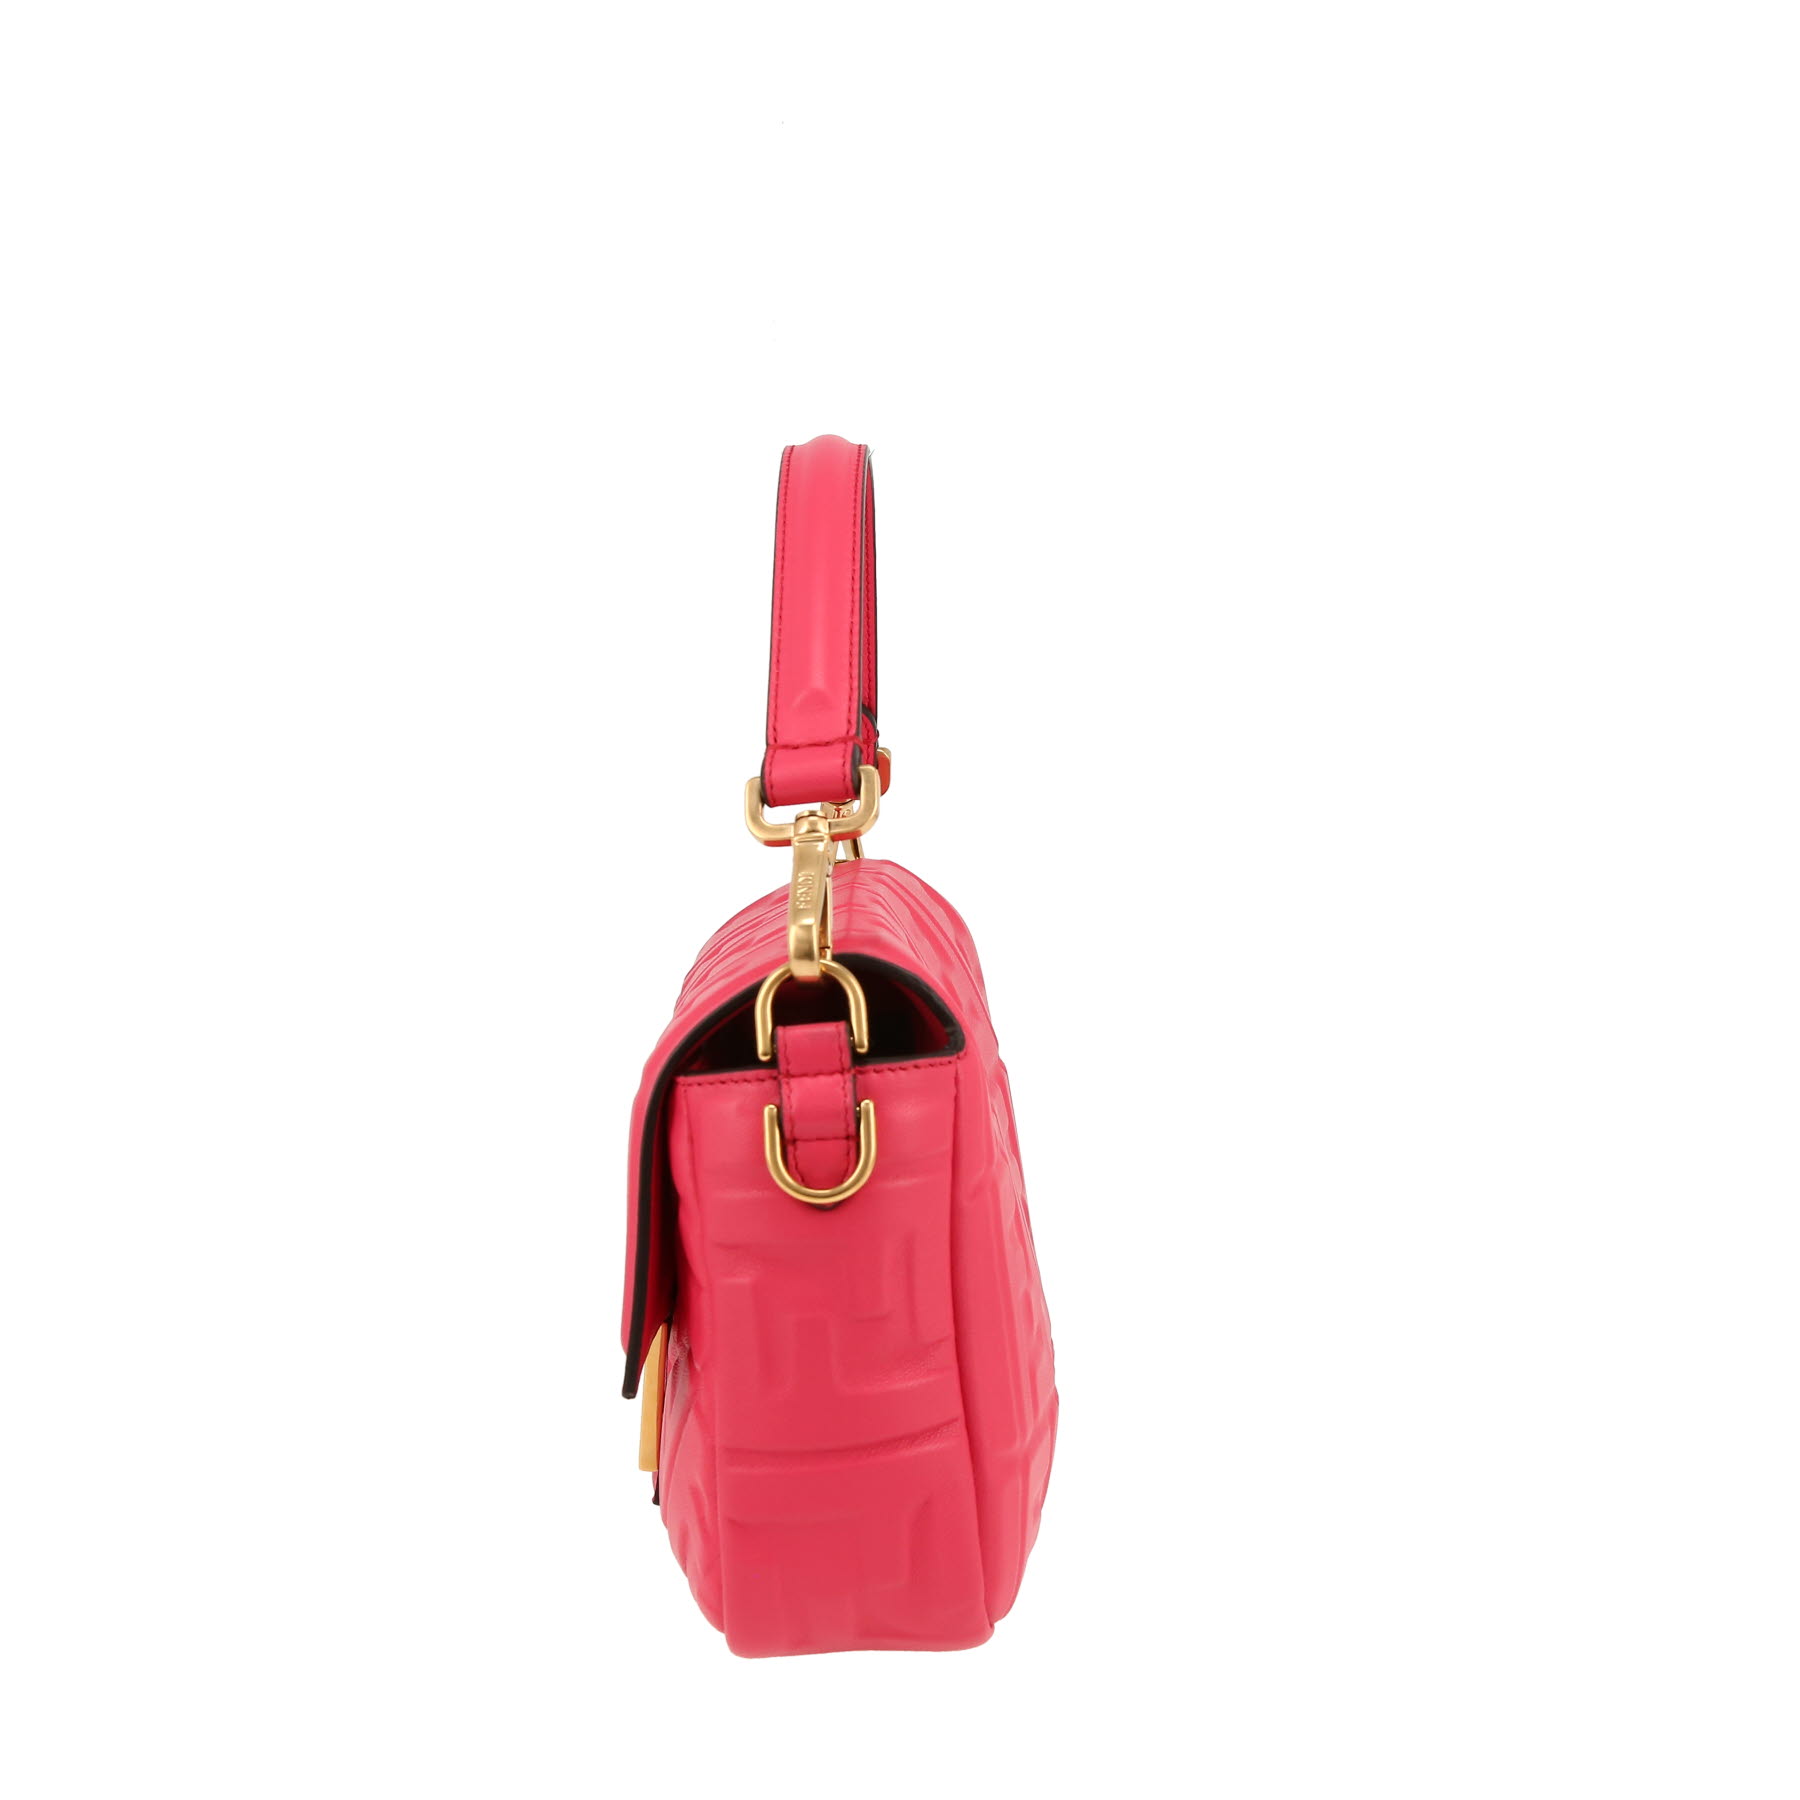 Baguette Handbag In Fushia Pink Monogram Leather